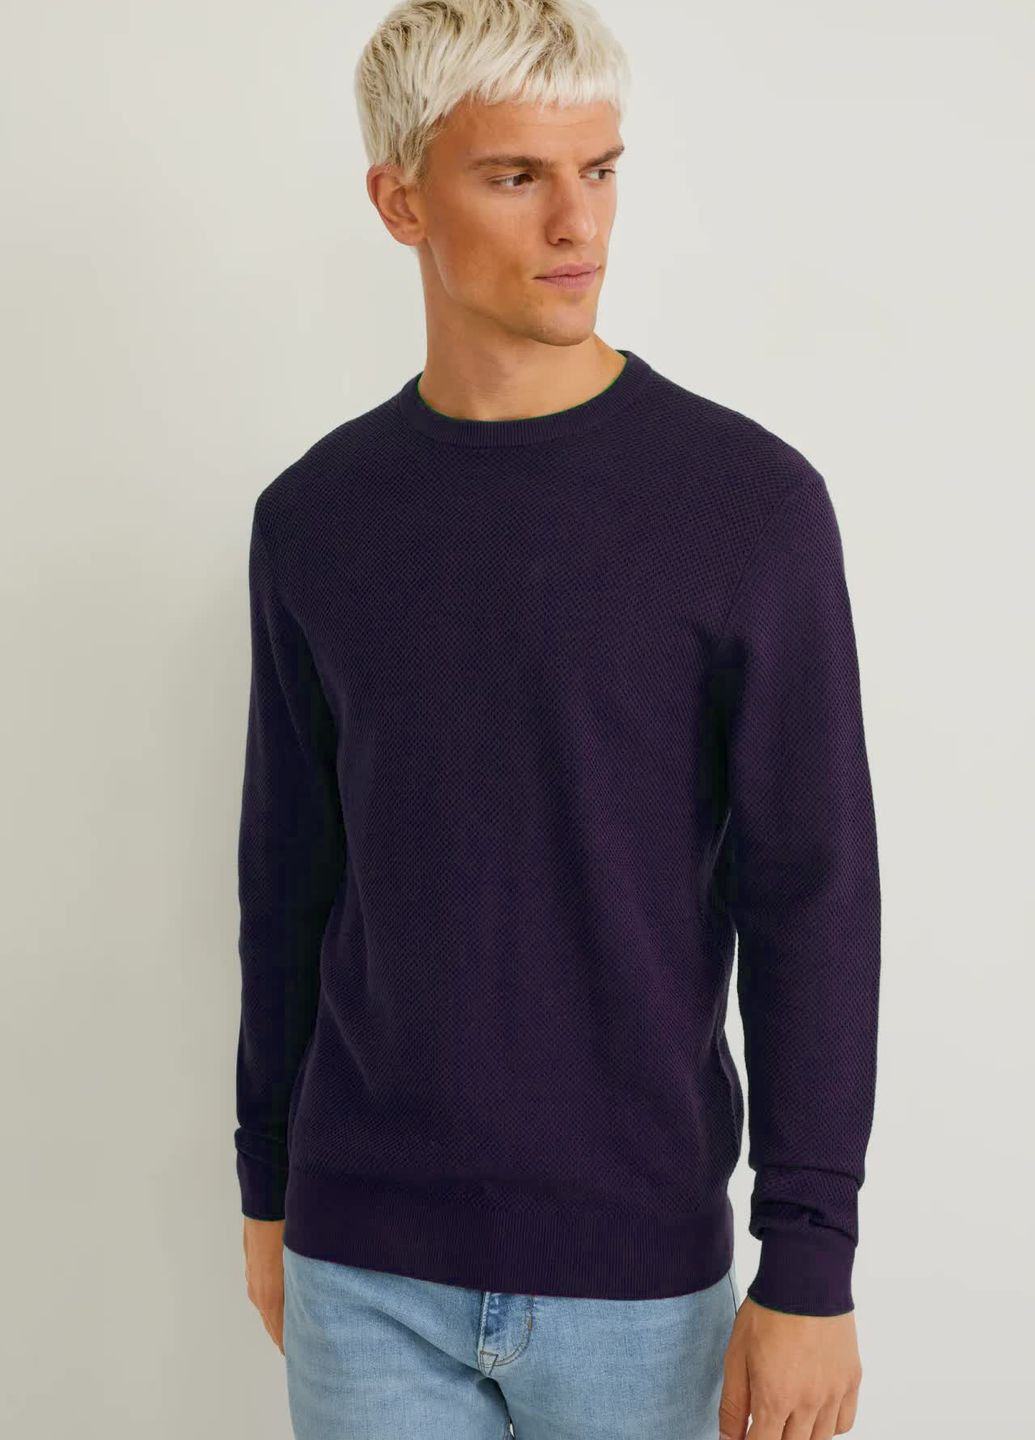 Фиолетовый демисезонный свитер из хлопка C&A